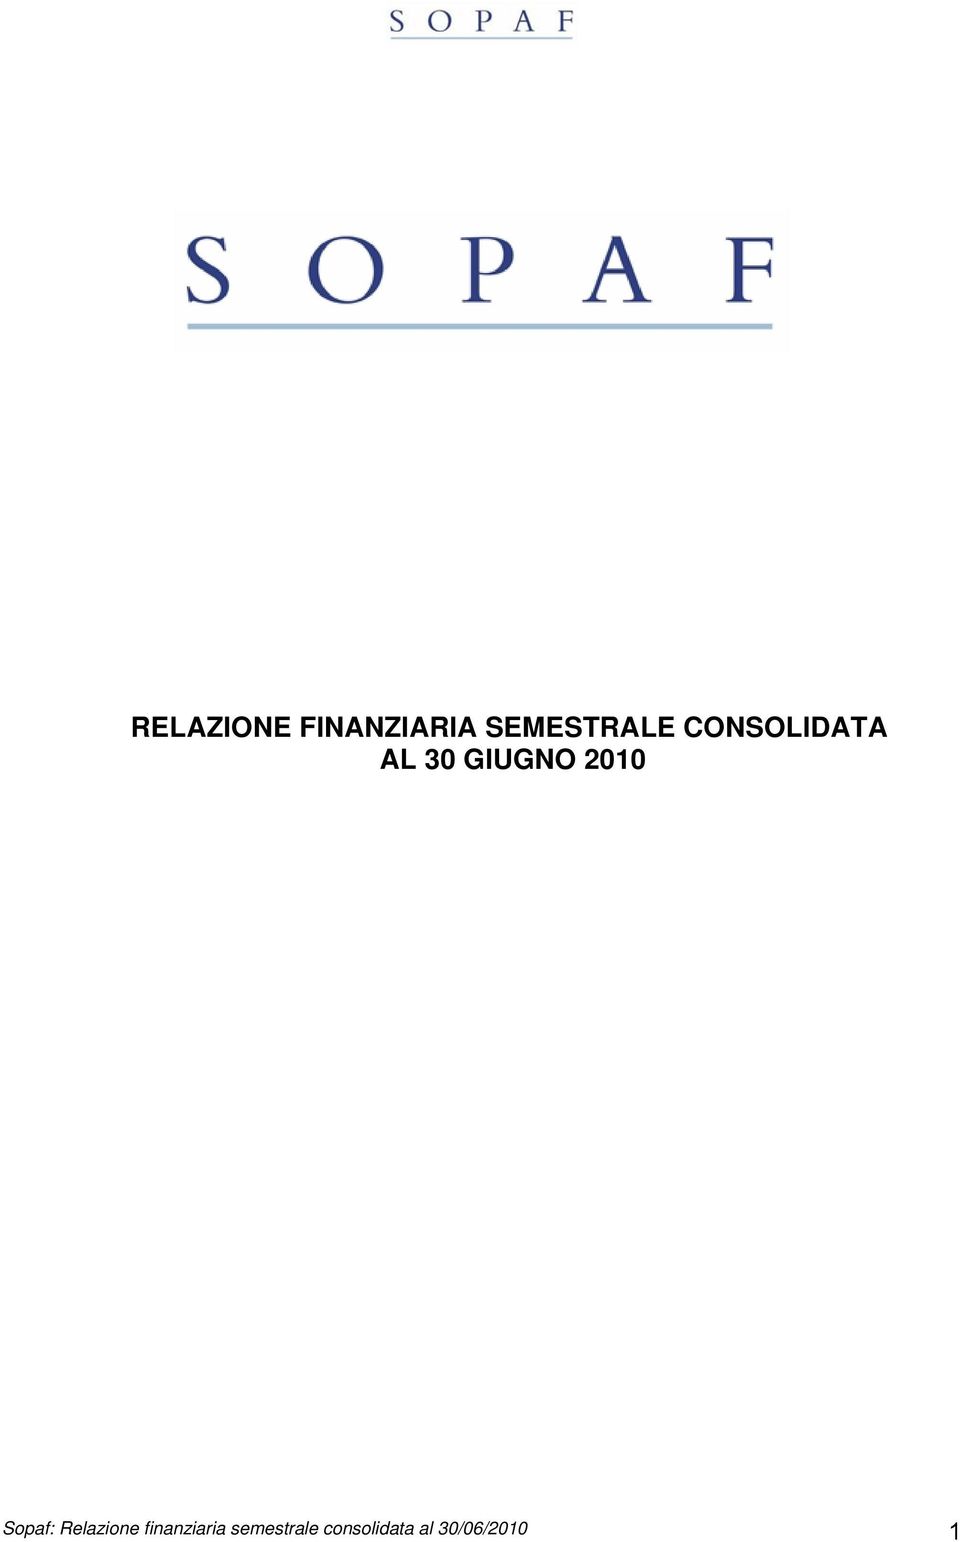 Sopaf: Relazione finanziaria